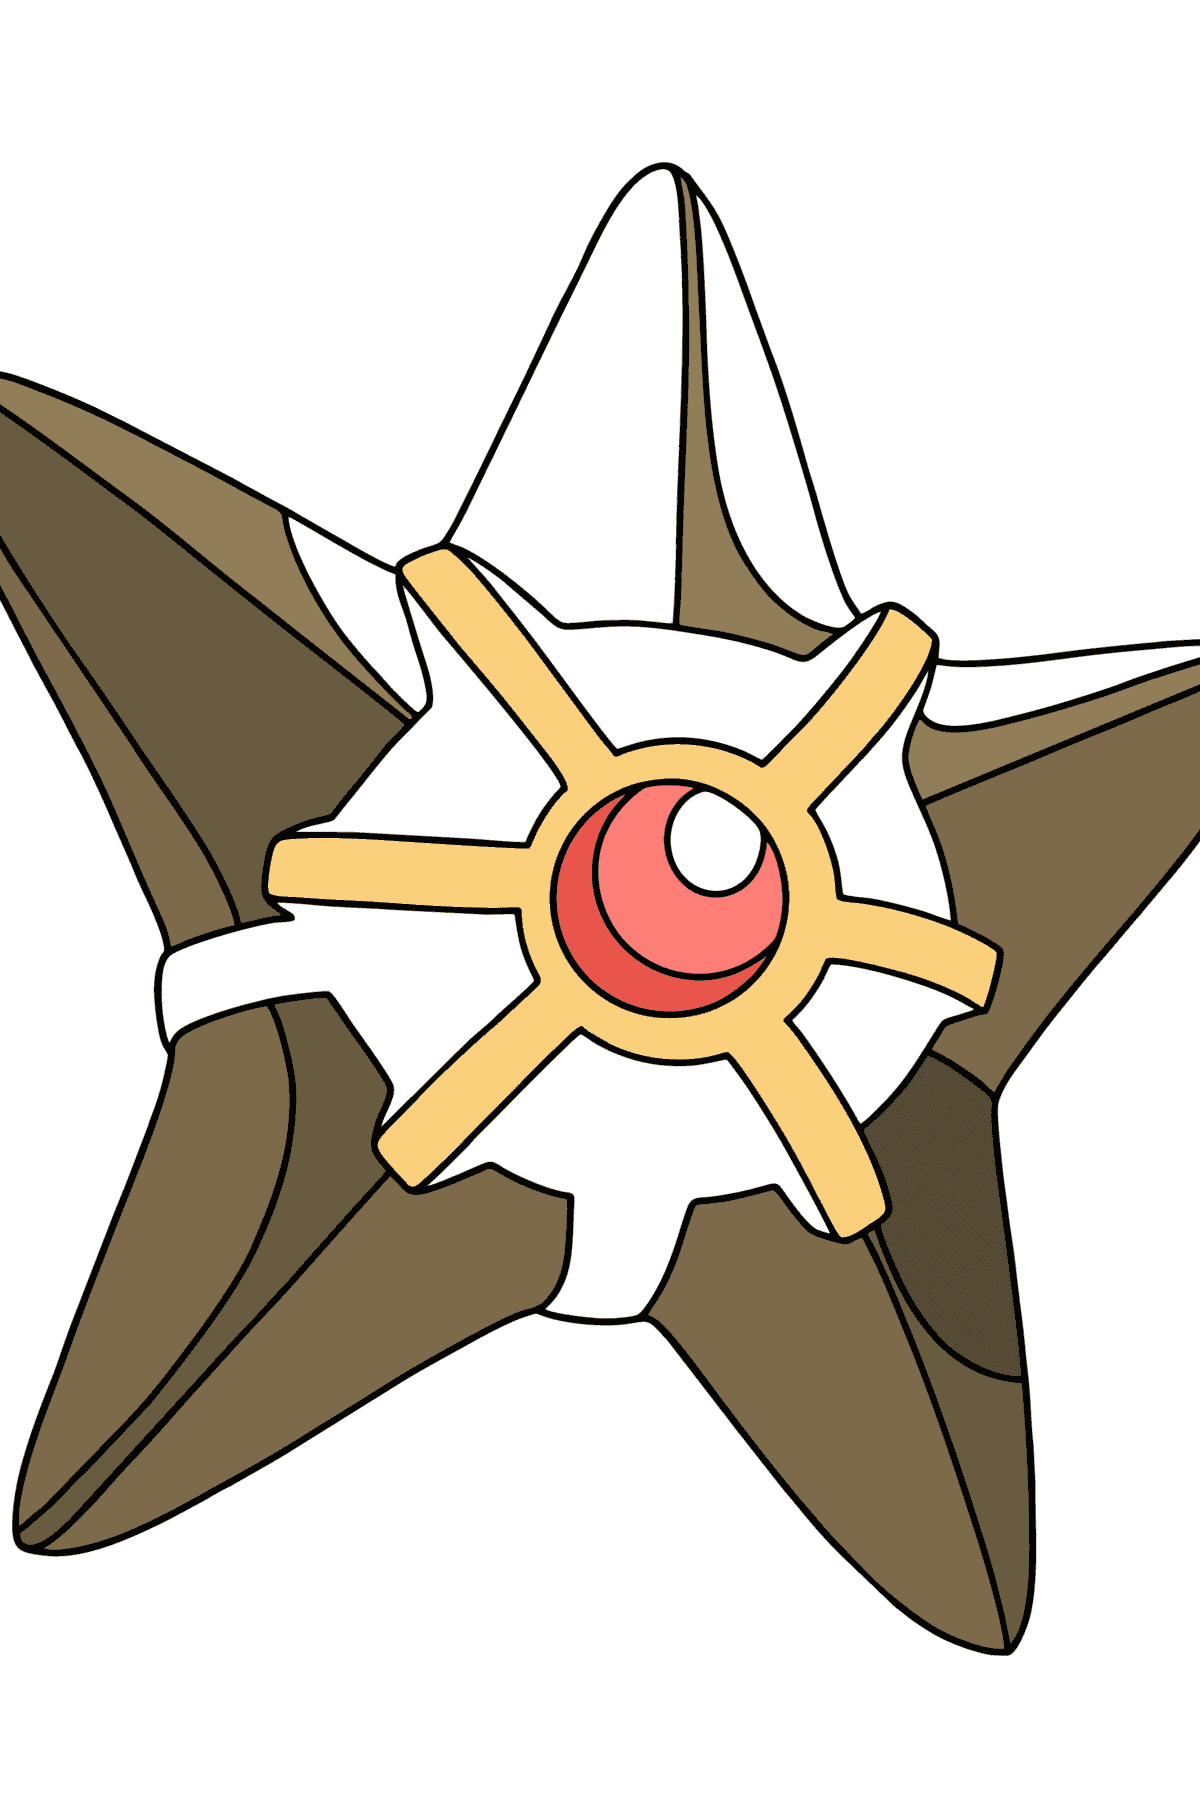 Boyama sayfası Pokémon XY Staryu - Boyamalar çocuklar için